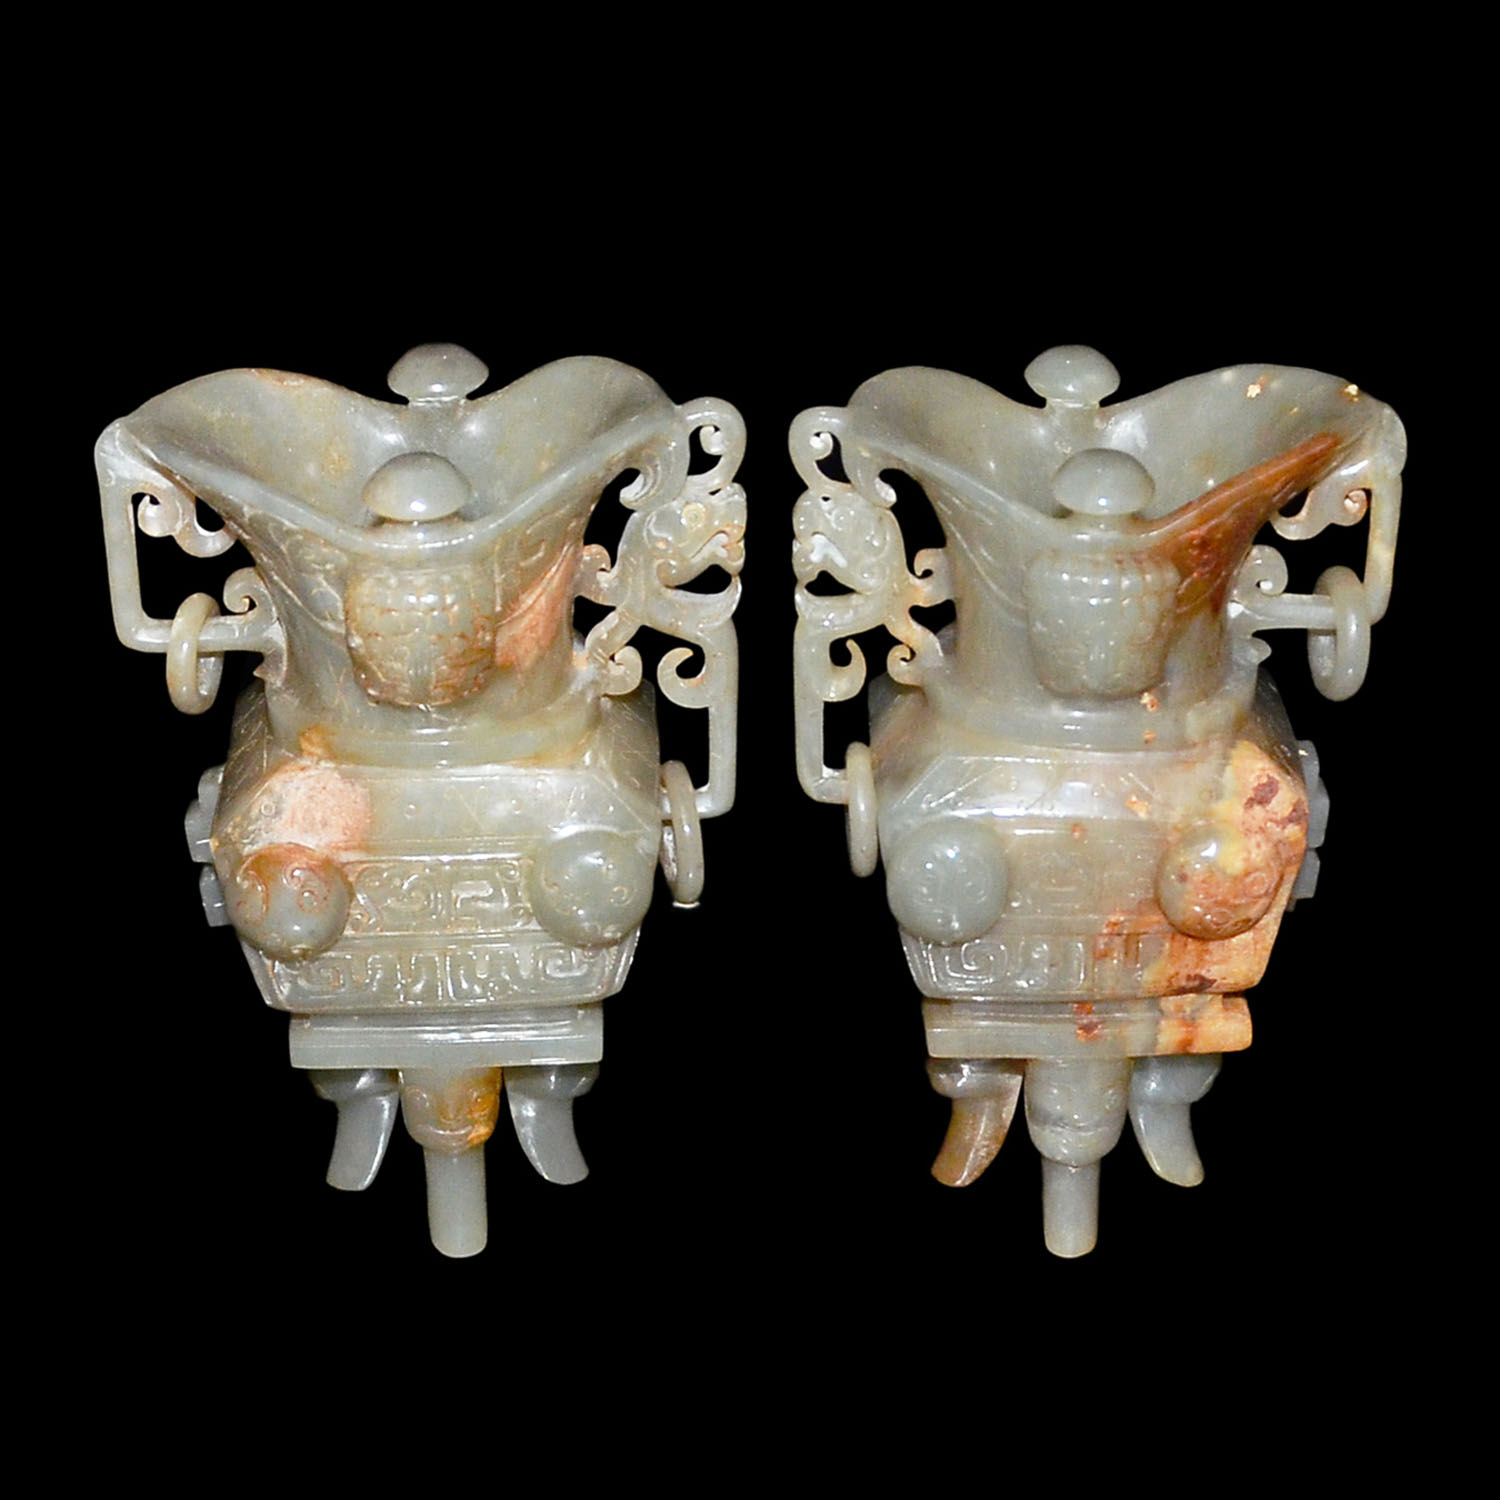 玉雕獸面紋活環四足方爵杯一對 A Pair of Carved Ceremonial Jade Jue with Taotie Masks, Loose Rings and Four